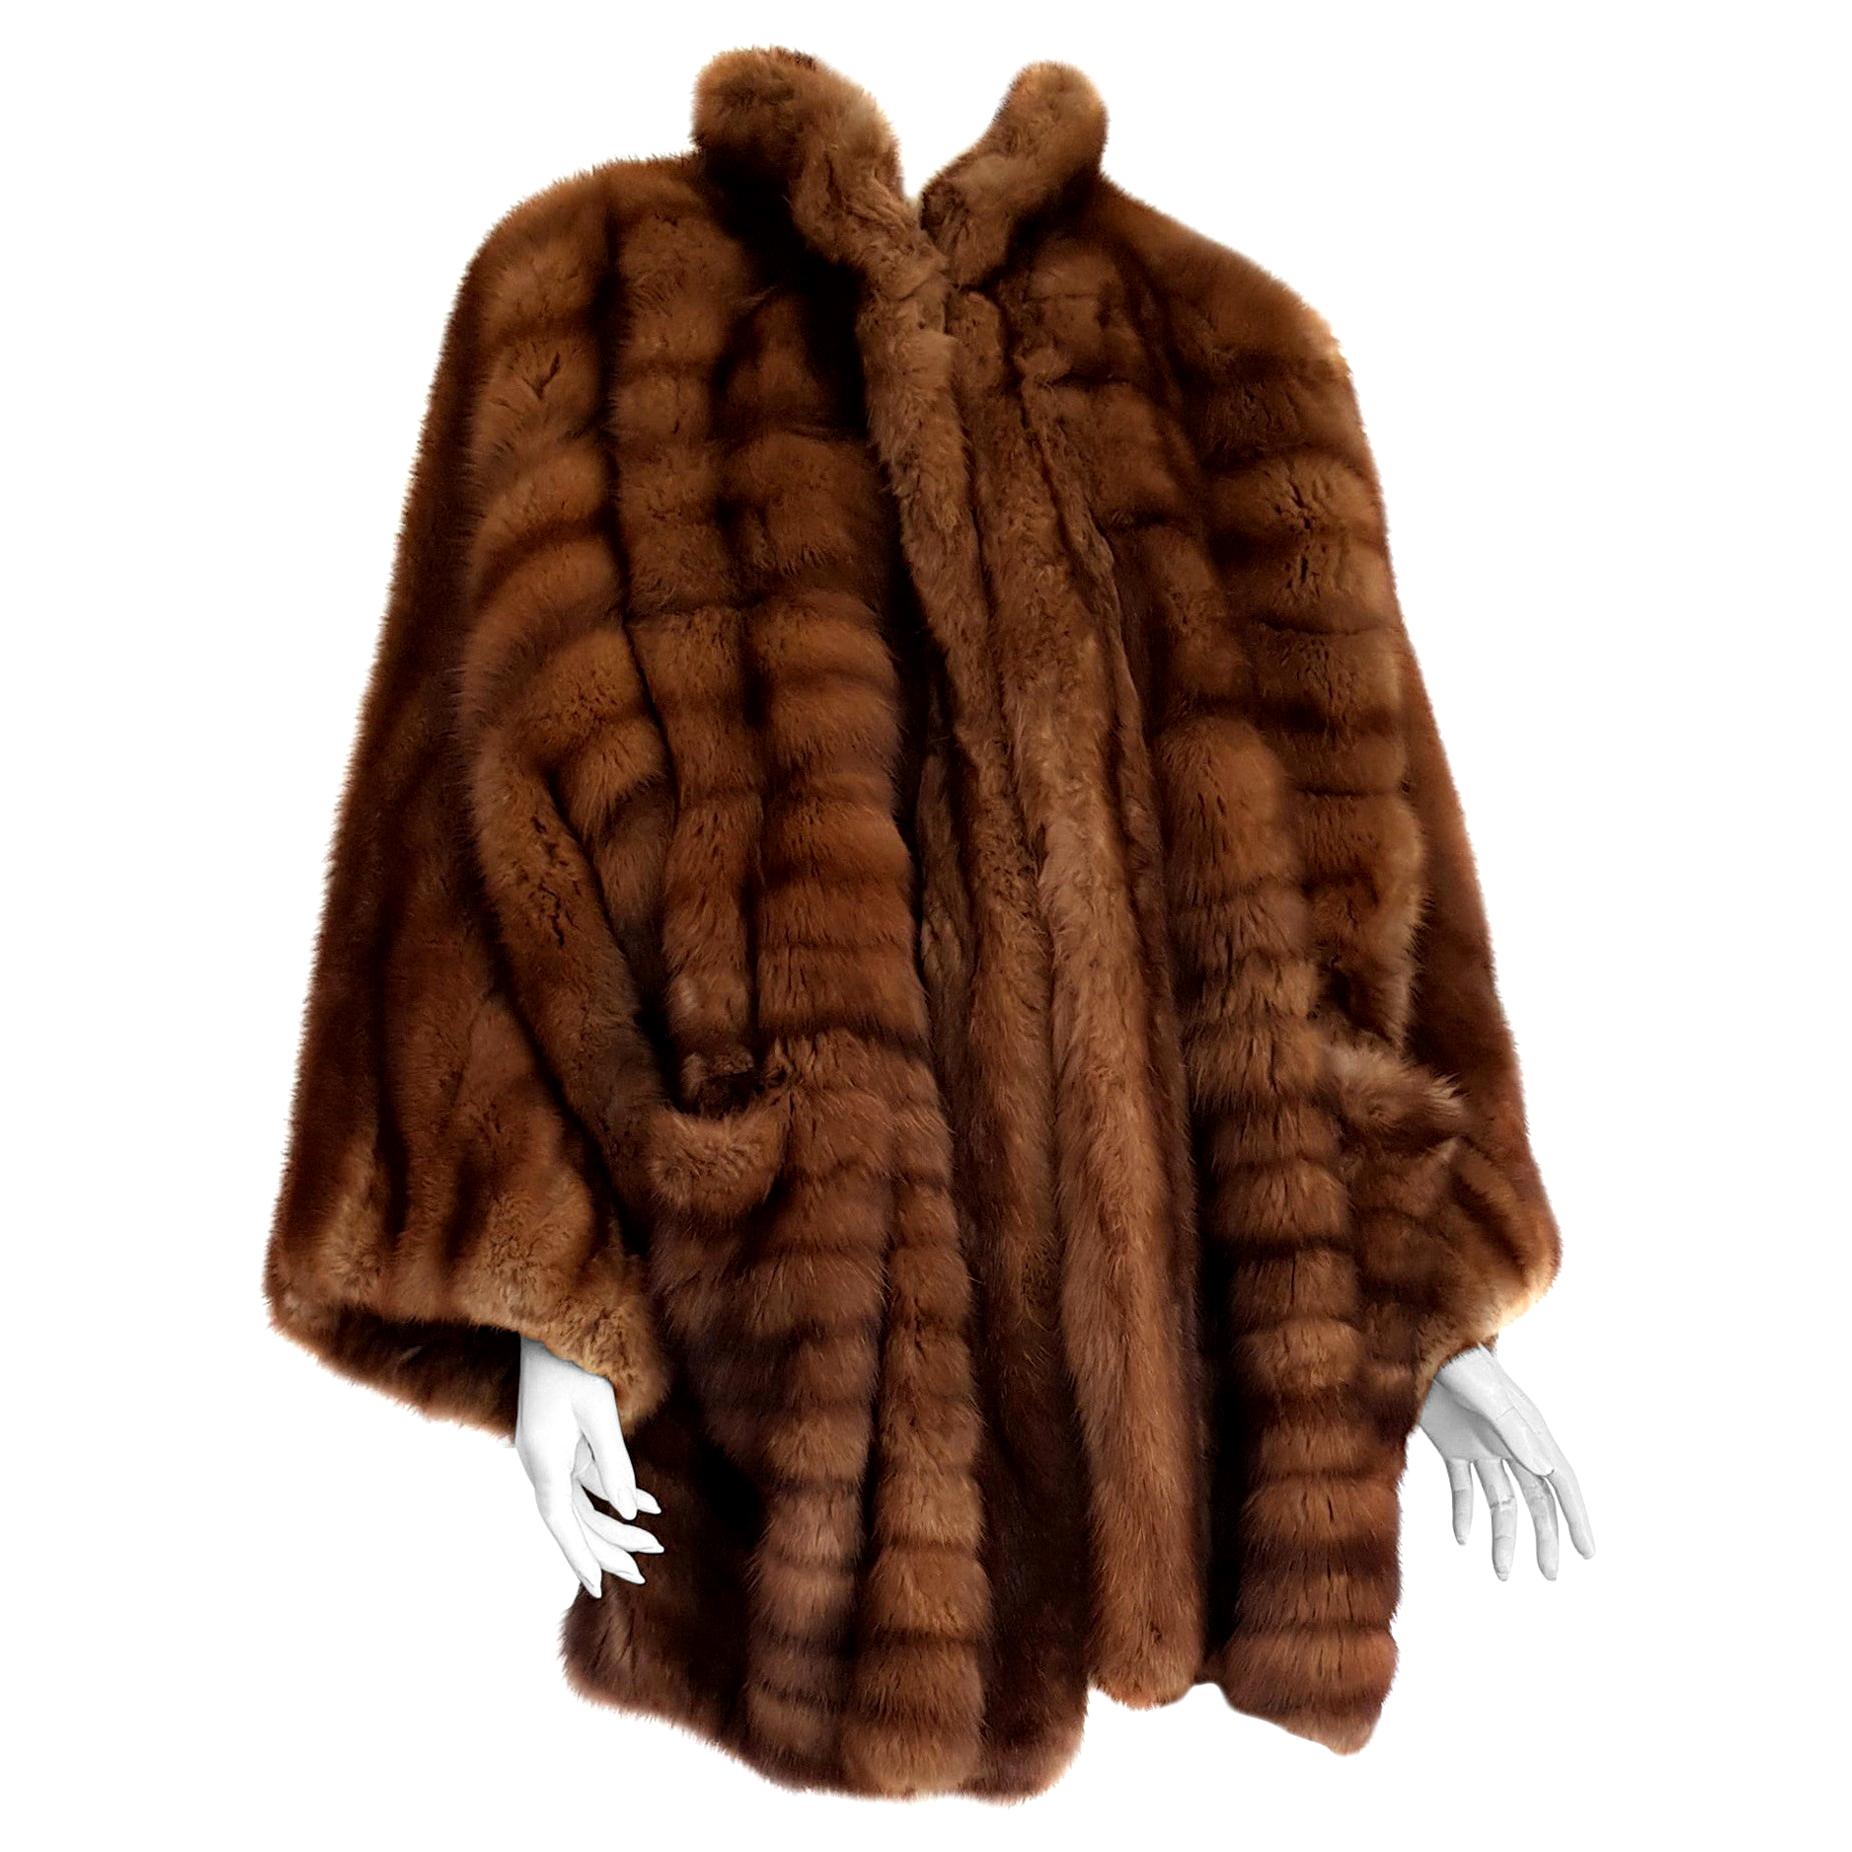 Gianfranco FERRÉ Haute Couture Wild Russian Barguzinsky Sable Fur Coat For Sale